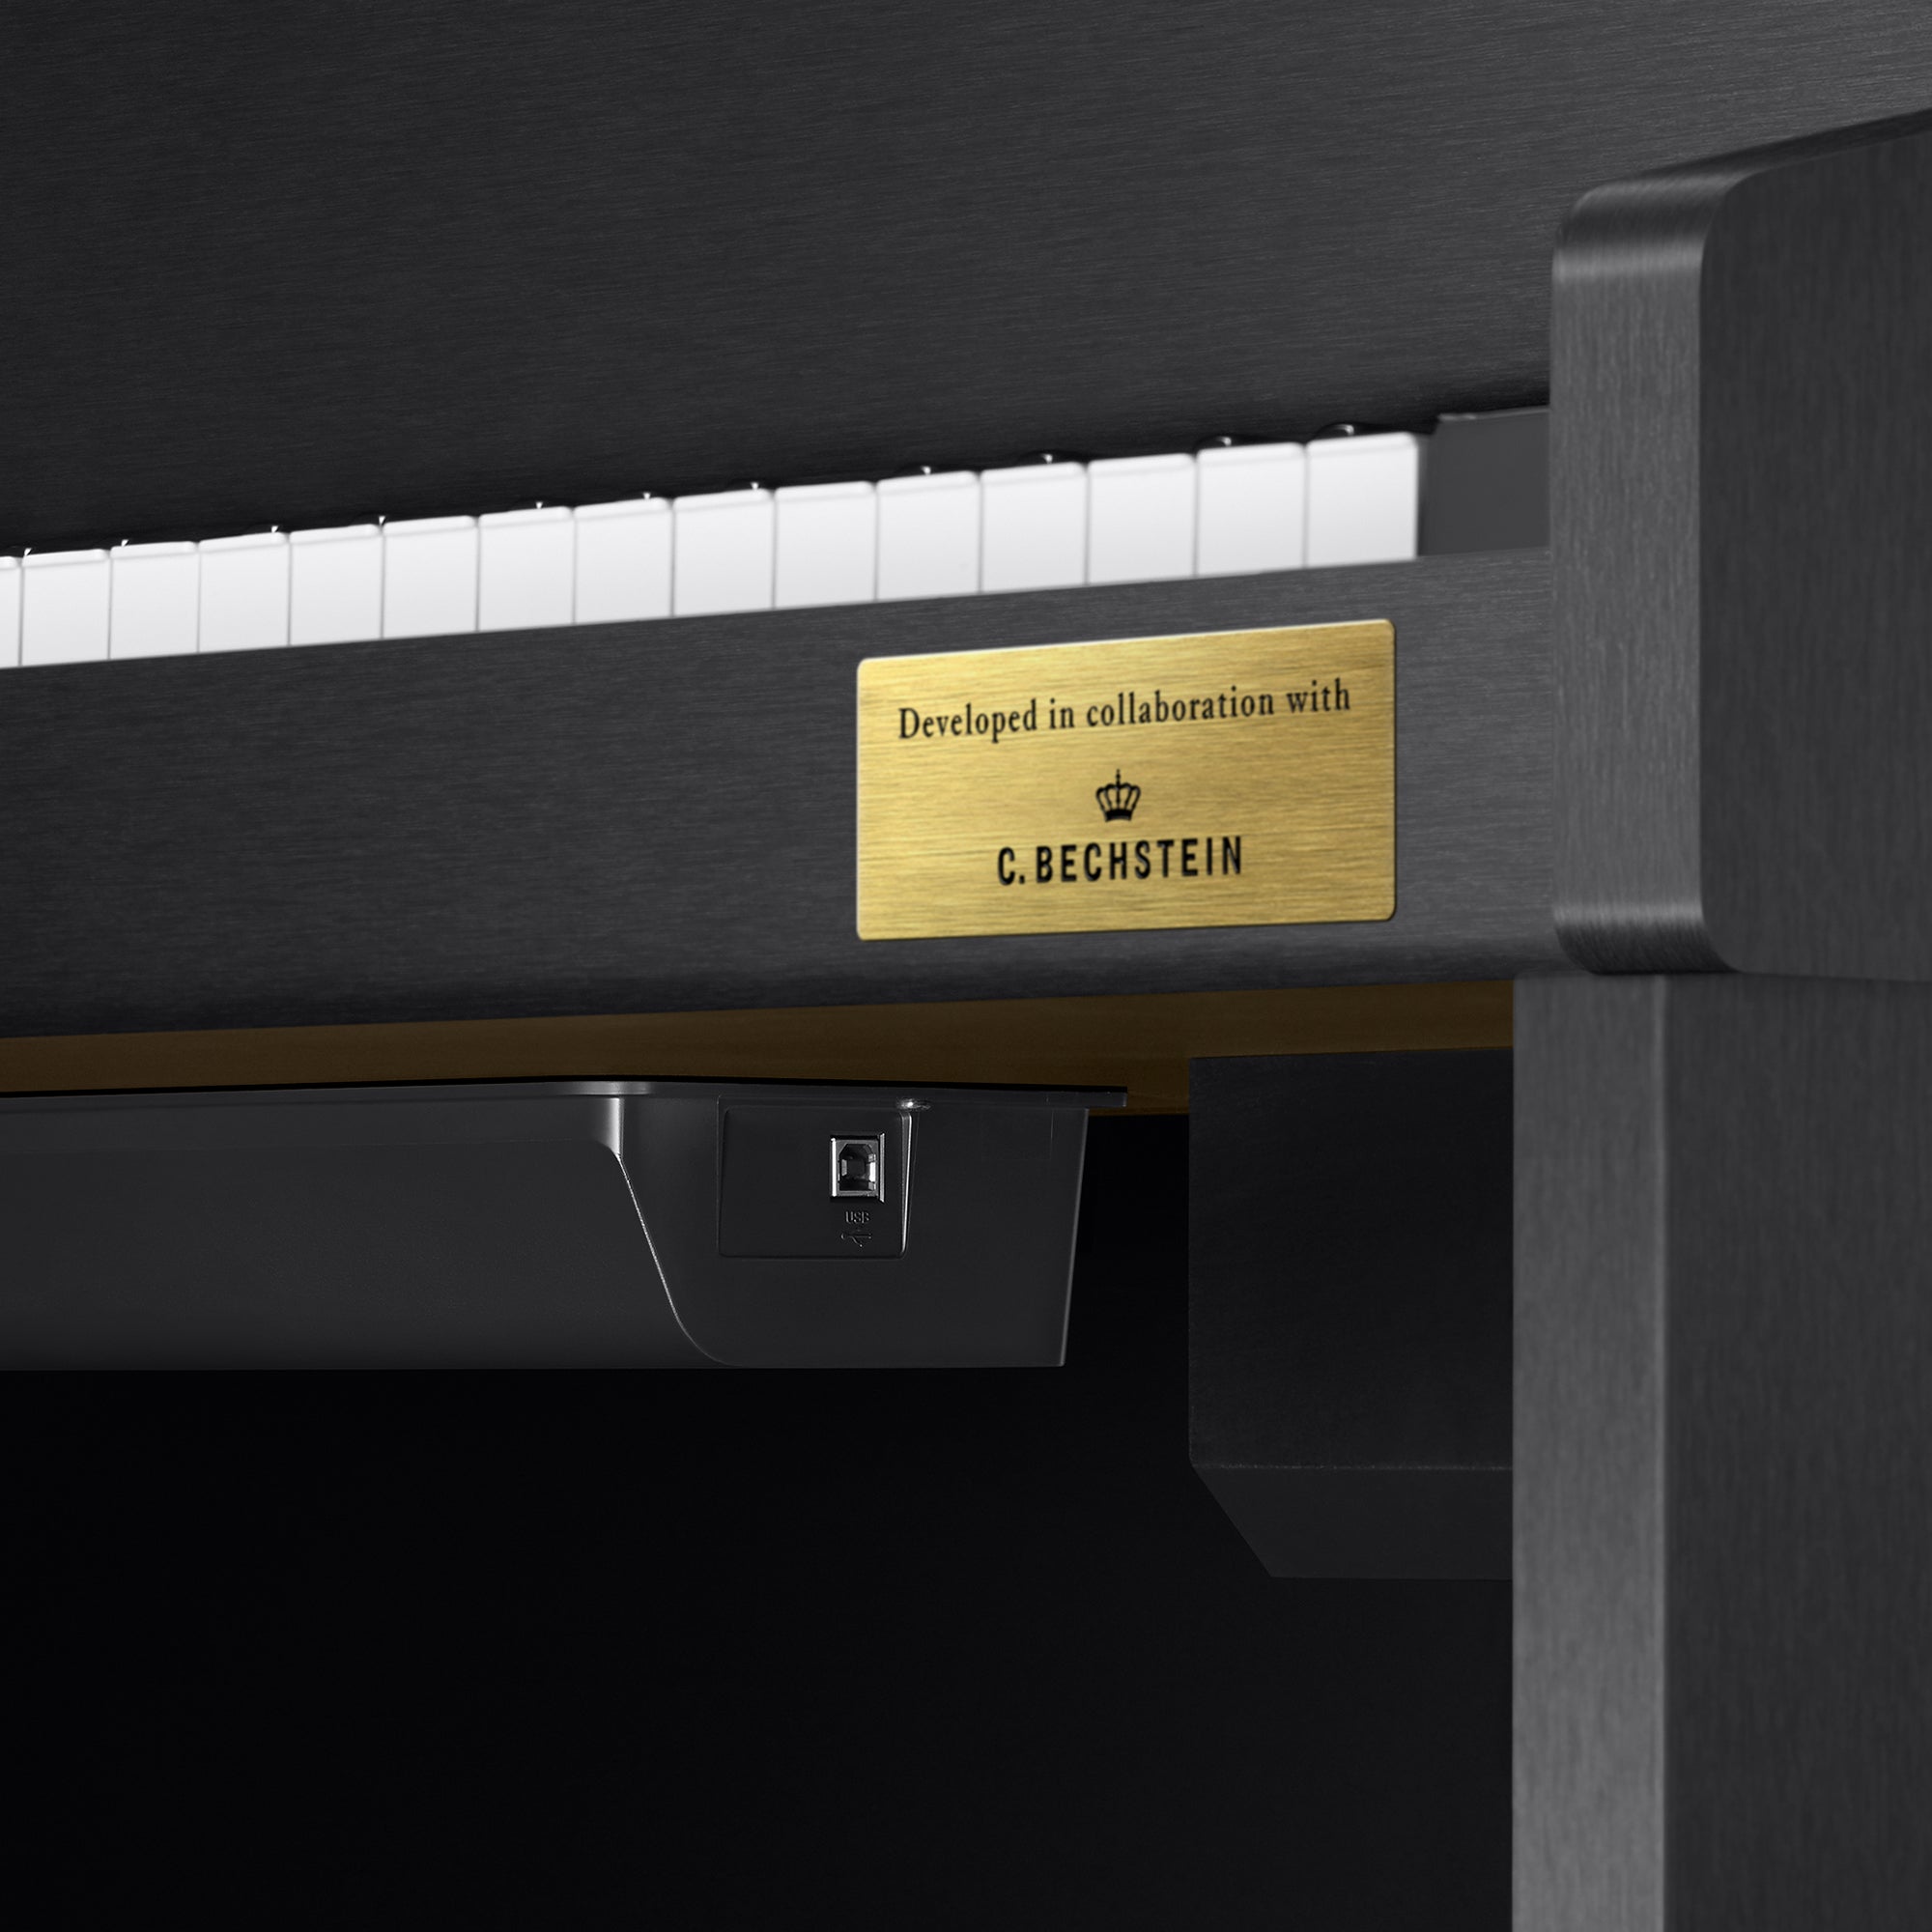 Casio Celviano Grand Hybrid GP-310 Digital Piano - Satin Black – Kraft Music